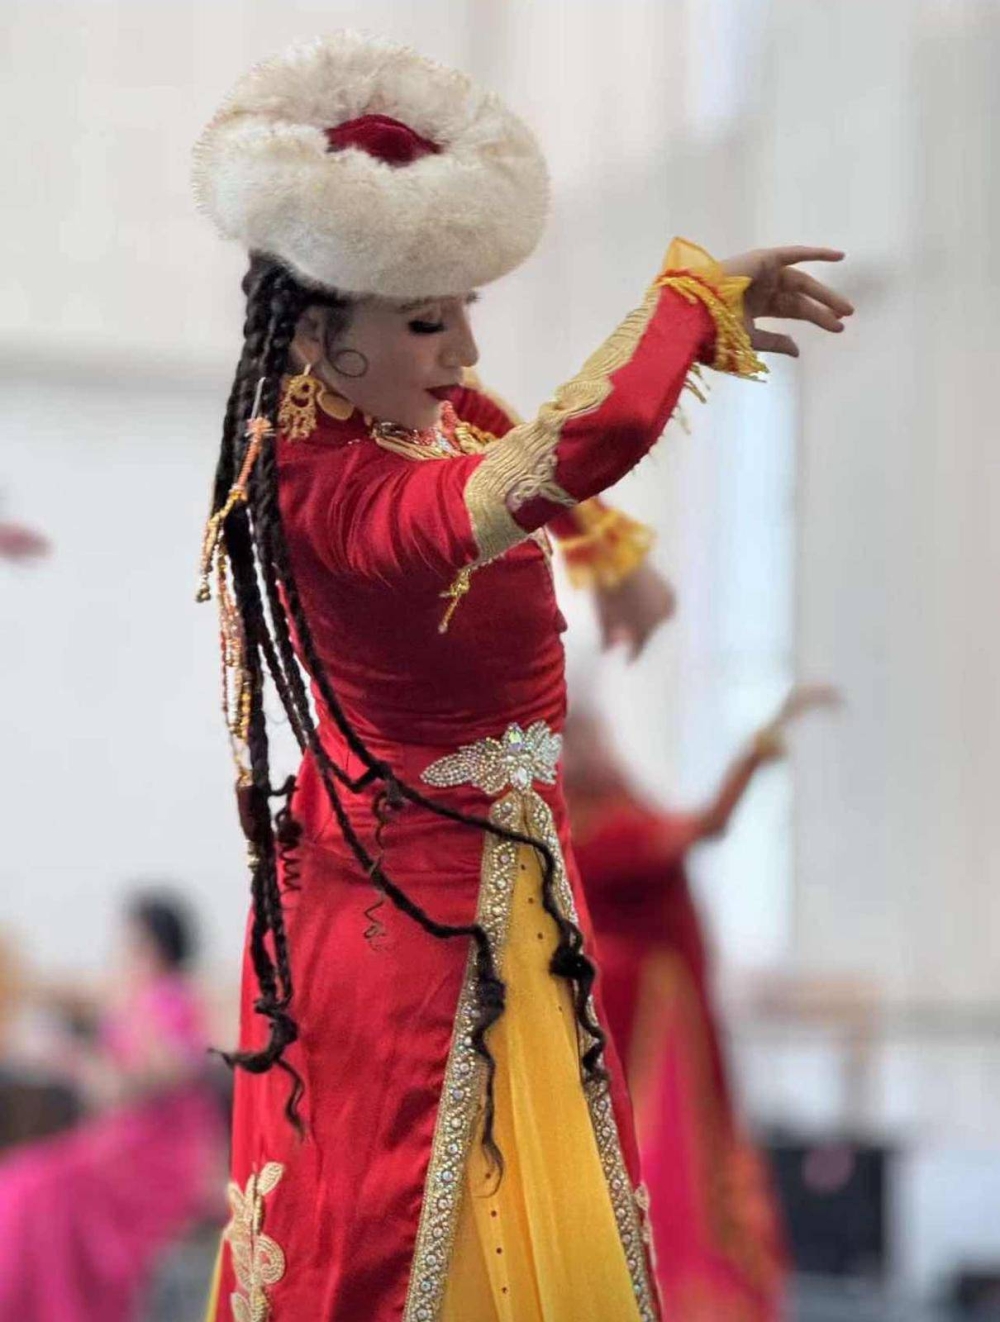 راقصة إيغورية (تصوير واتشارين سيتاكودان)
